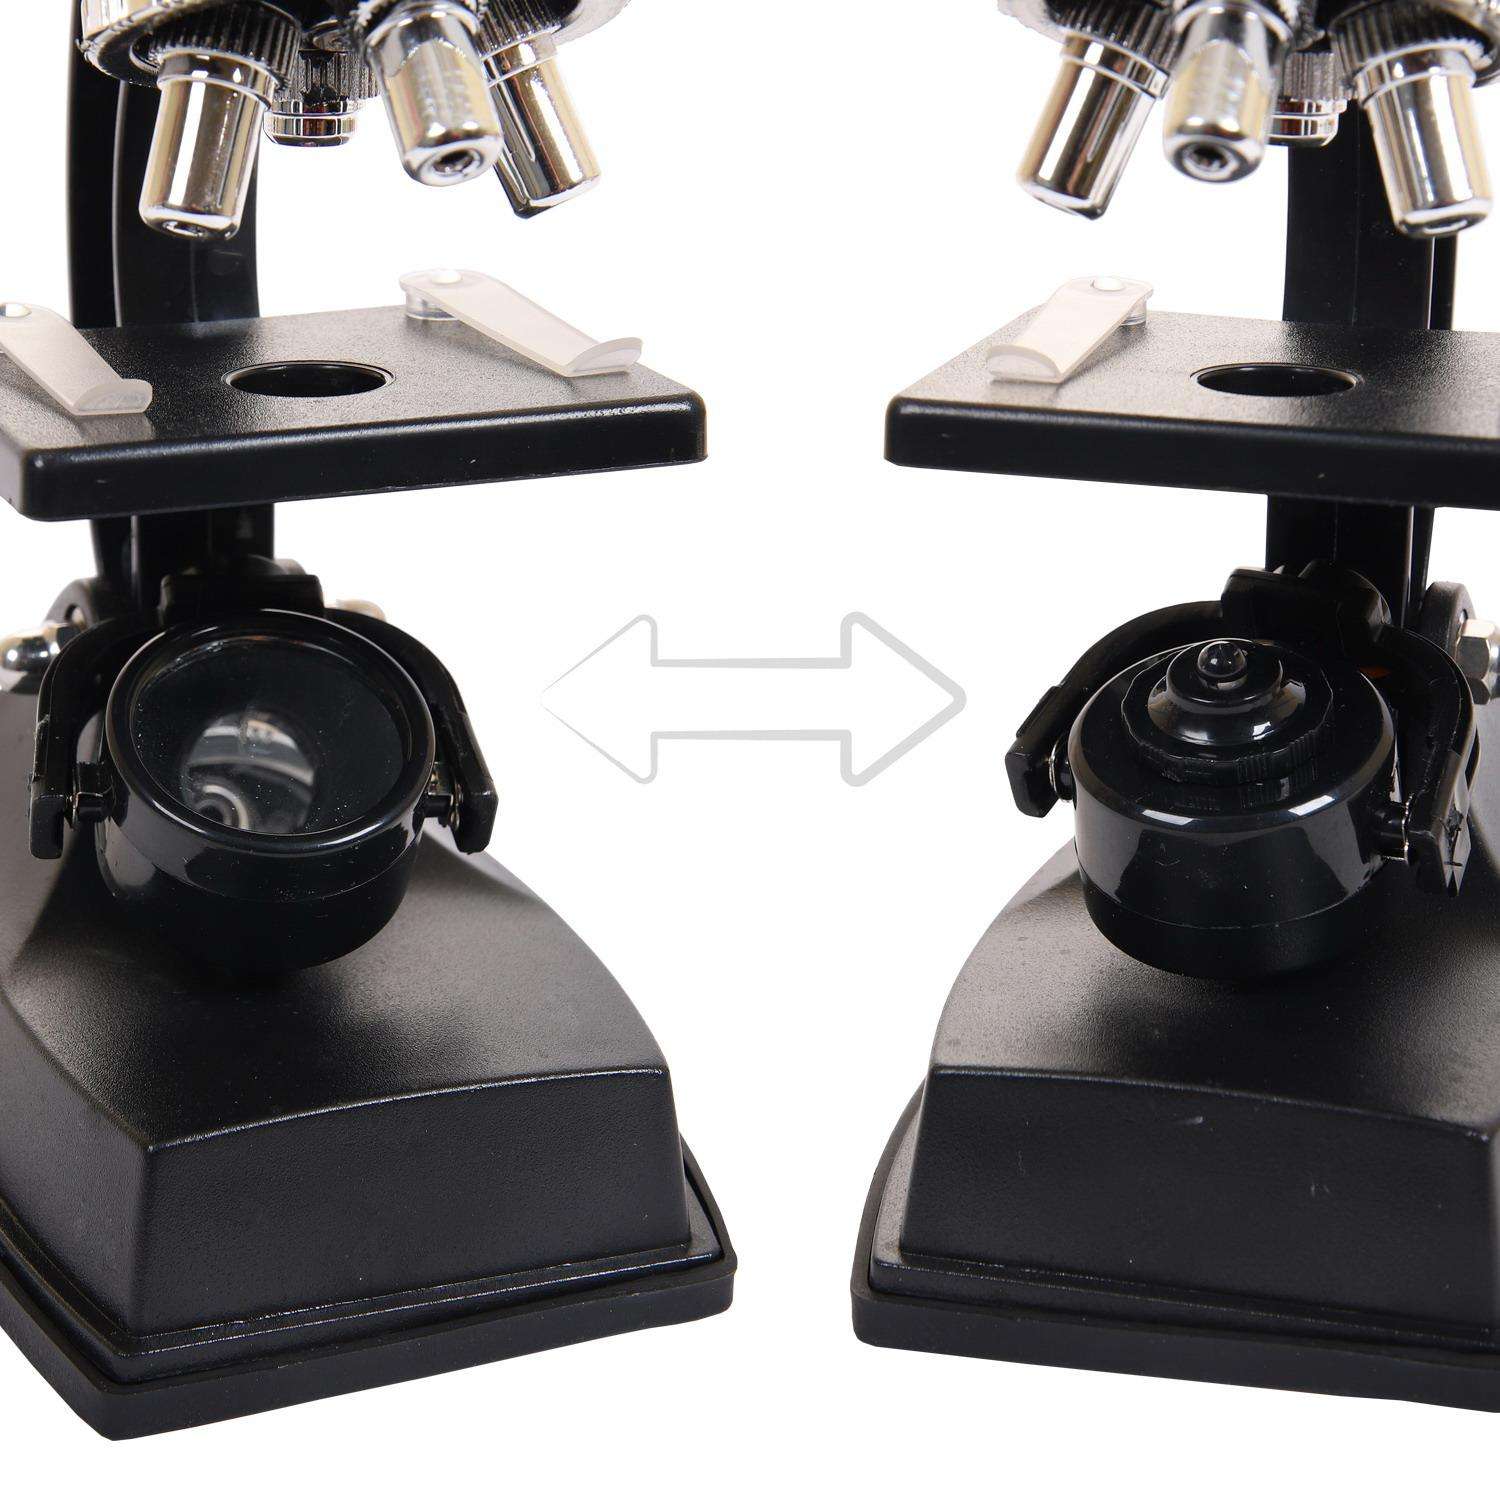 Микроскоп Junfa В наборе с аксессуарами - фото 5